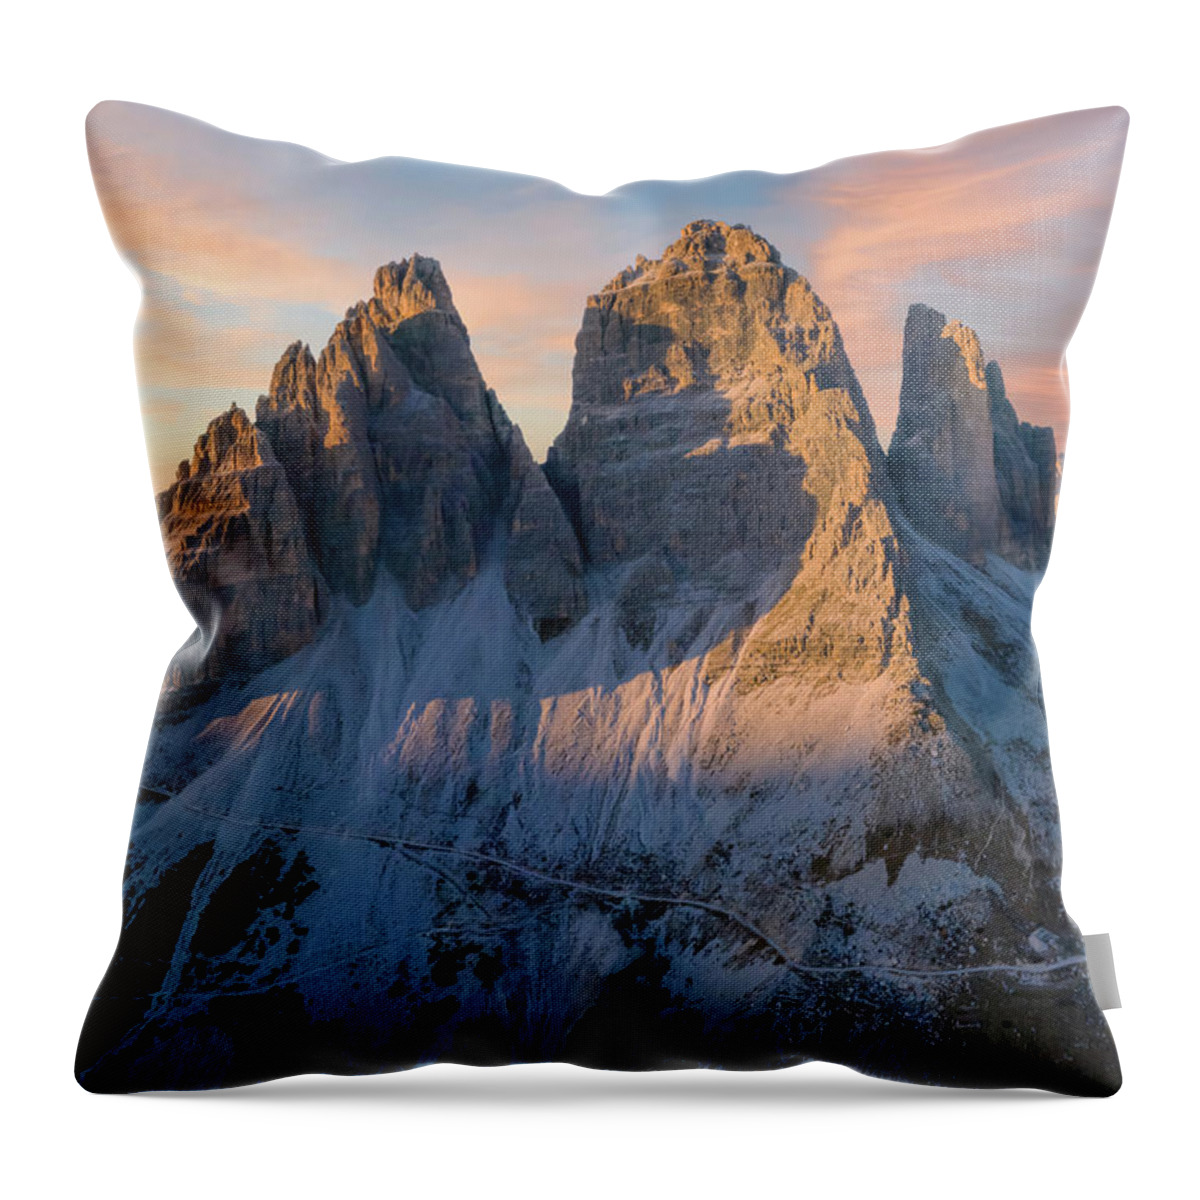 Landscape Throw Pillow featuring the photograph Beside Drei Zinnen by Steve Berkley